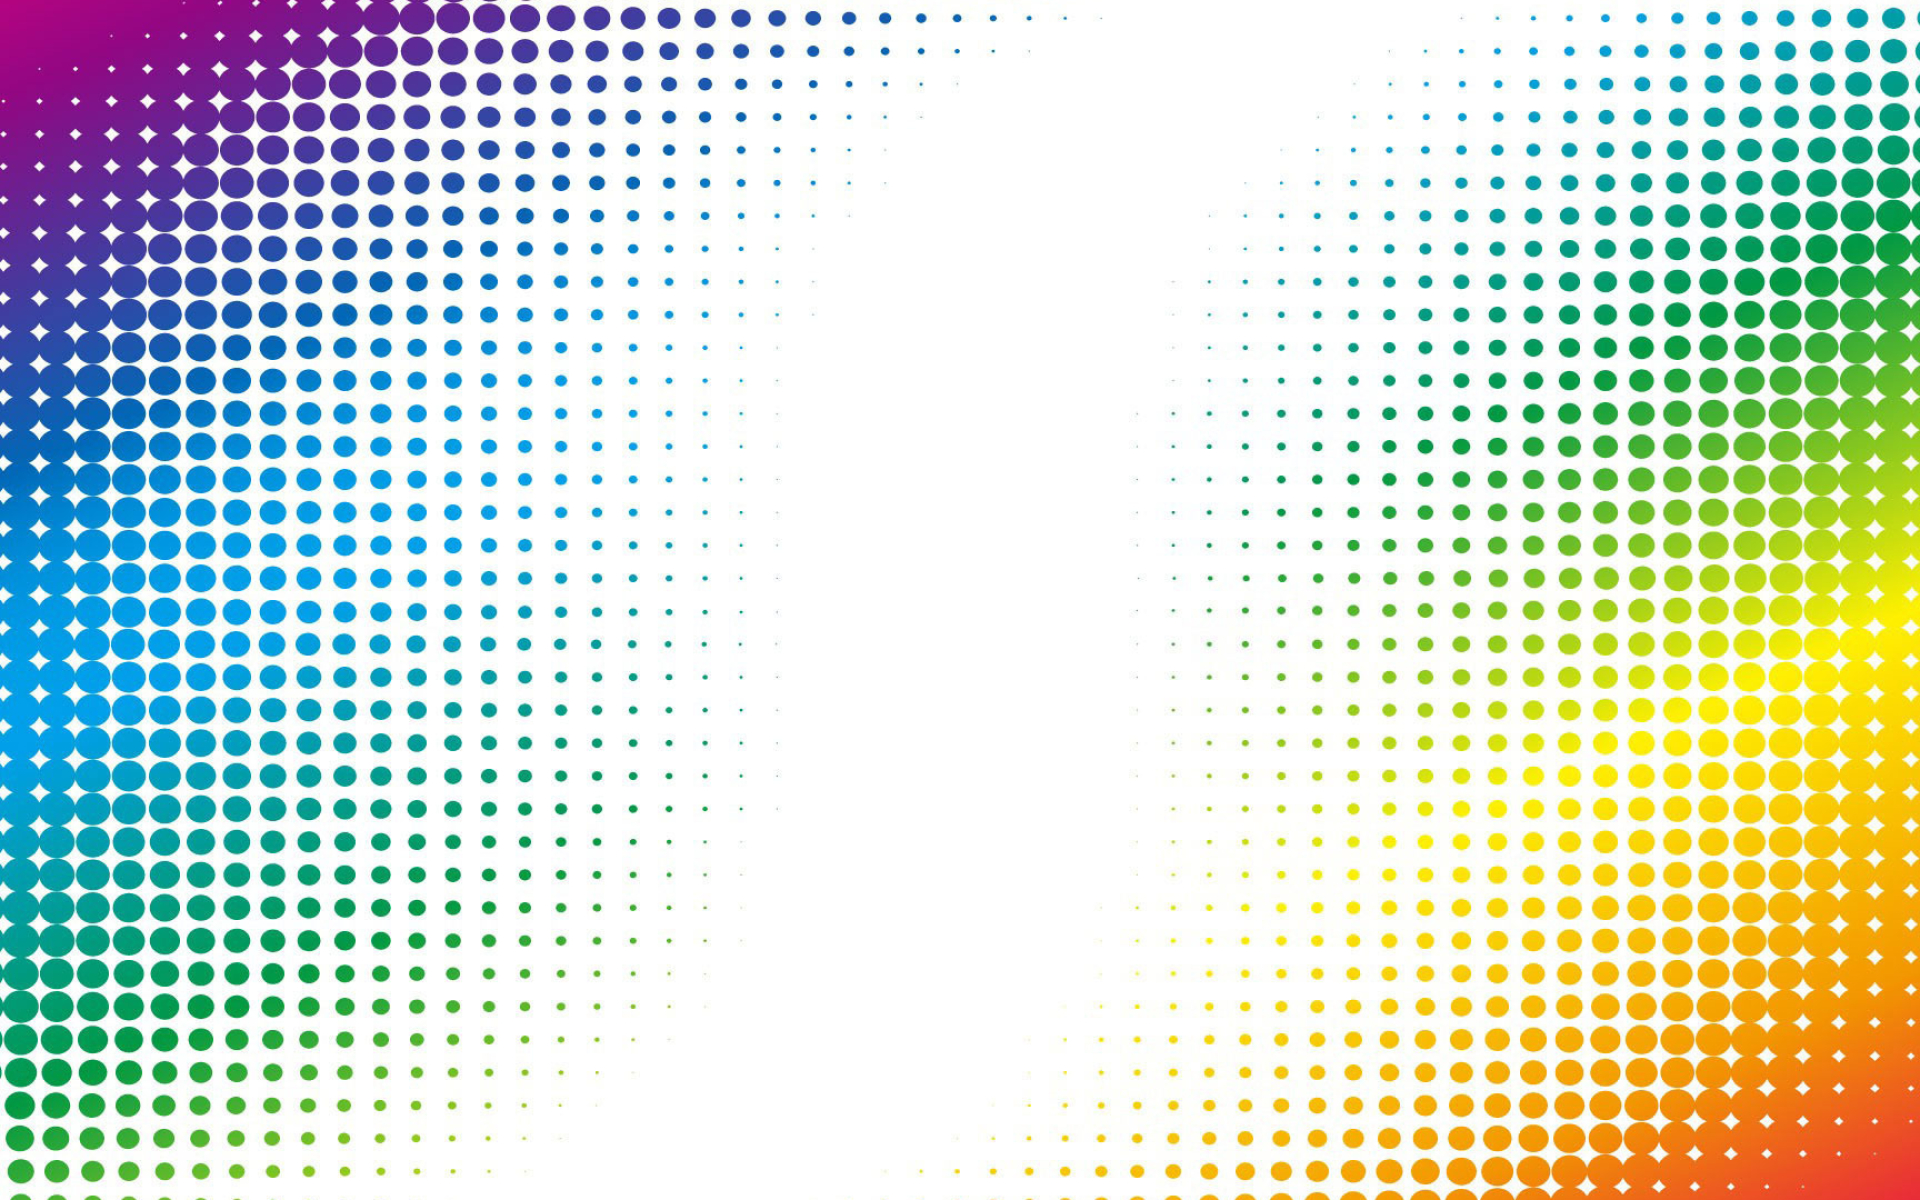 Curved dots wallpaper, Abstract design, Digital art, Creative pattern, 1920x1200 HD Desktop